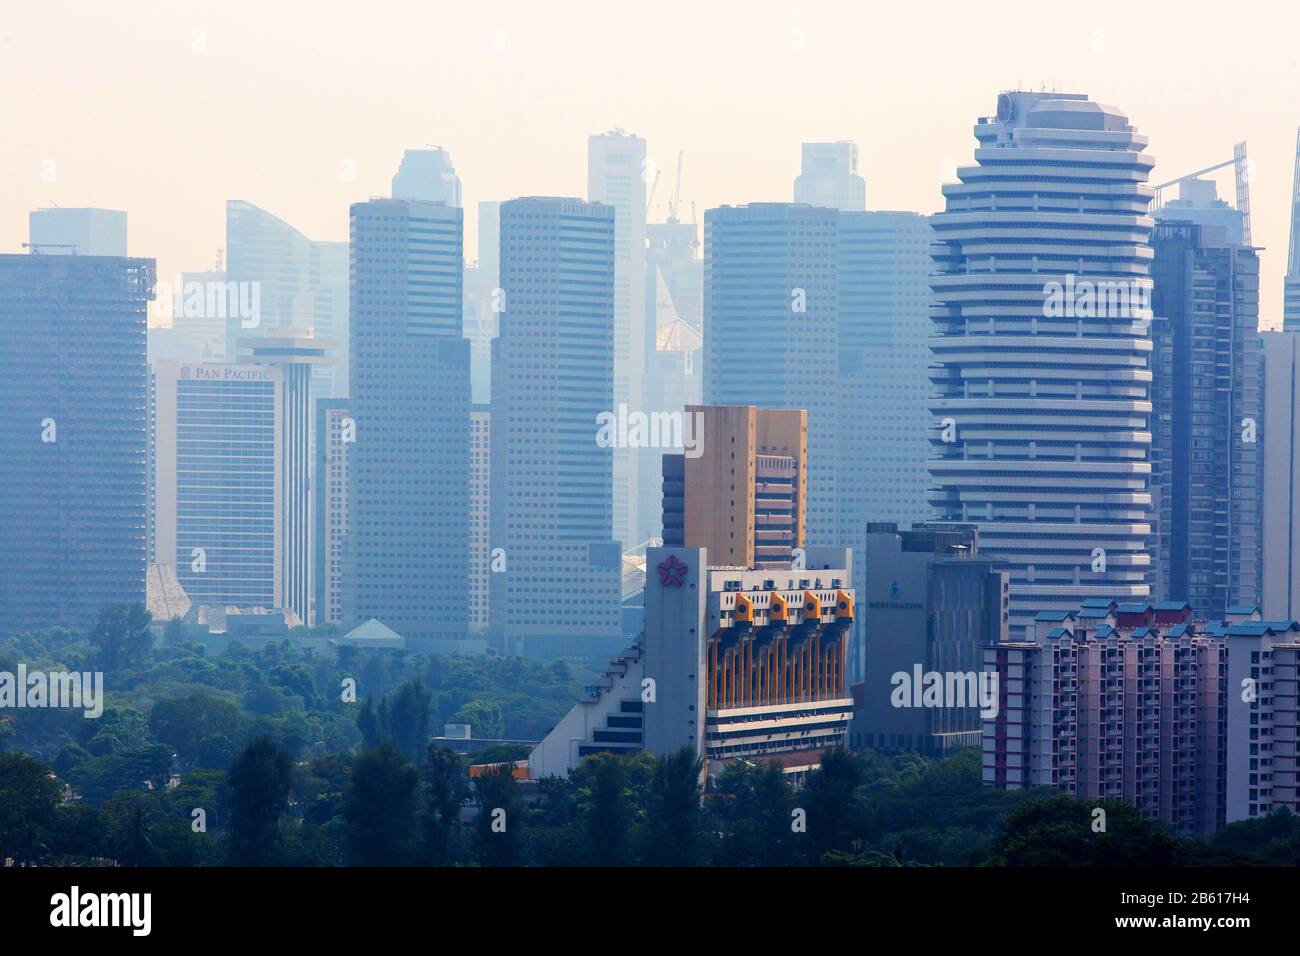 Erhöhte Nahaufnahme verschiedener Geschäftsgebäude und Wolkenkratzer in Singapur. Stockfoto